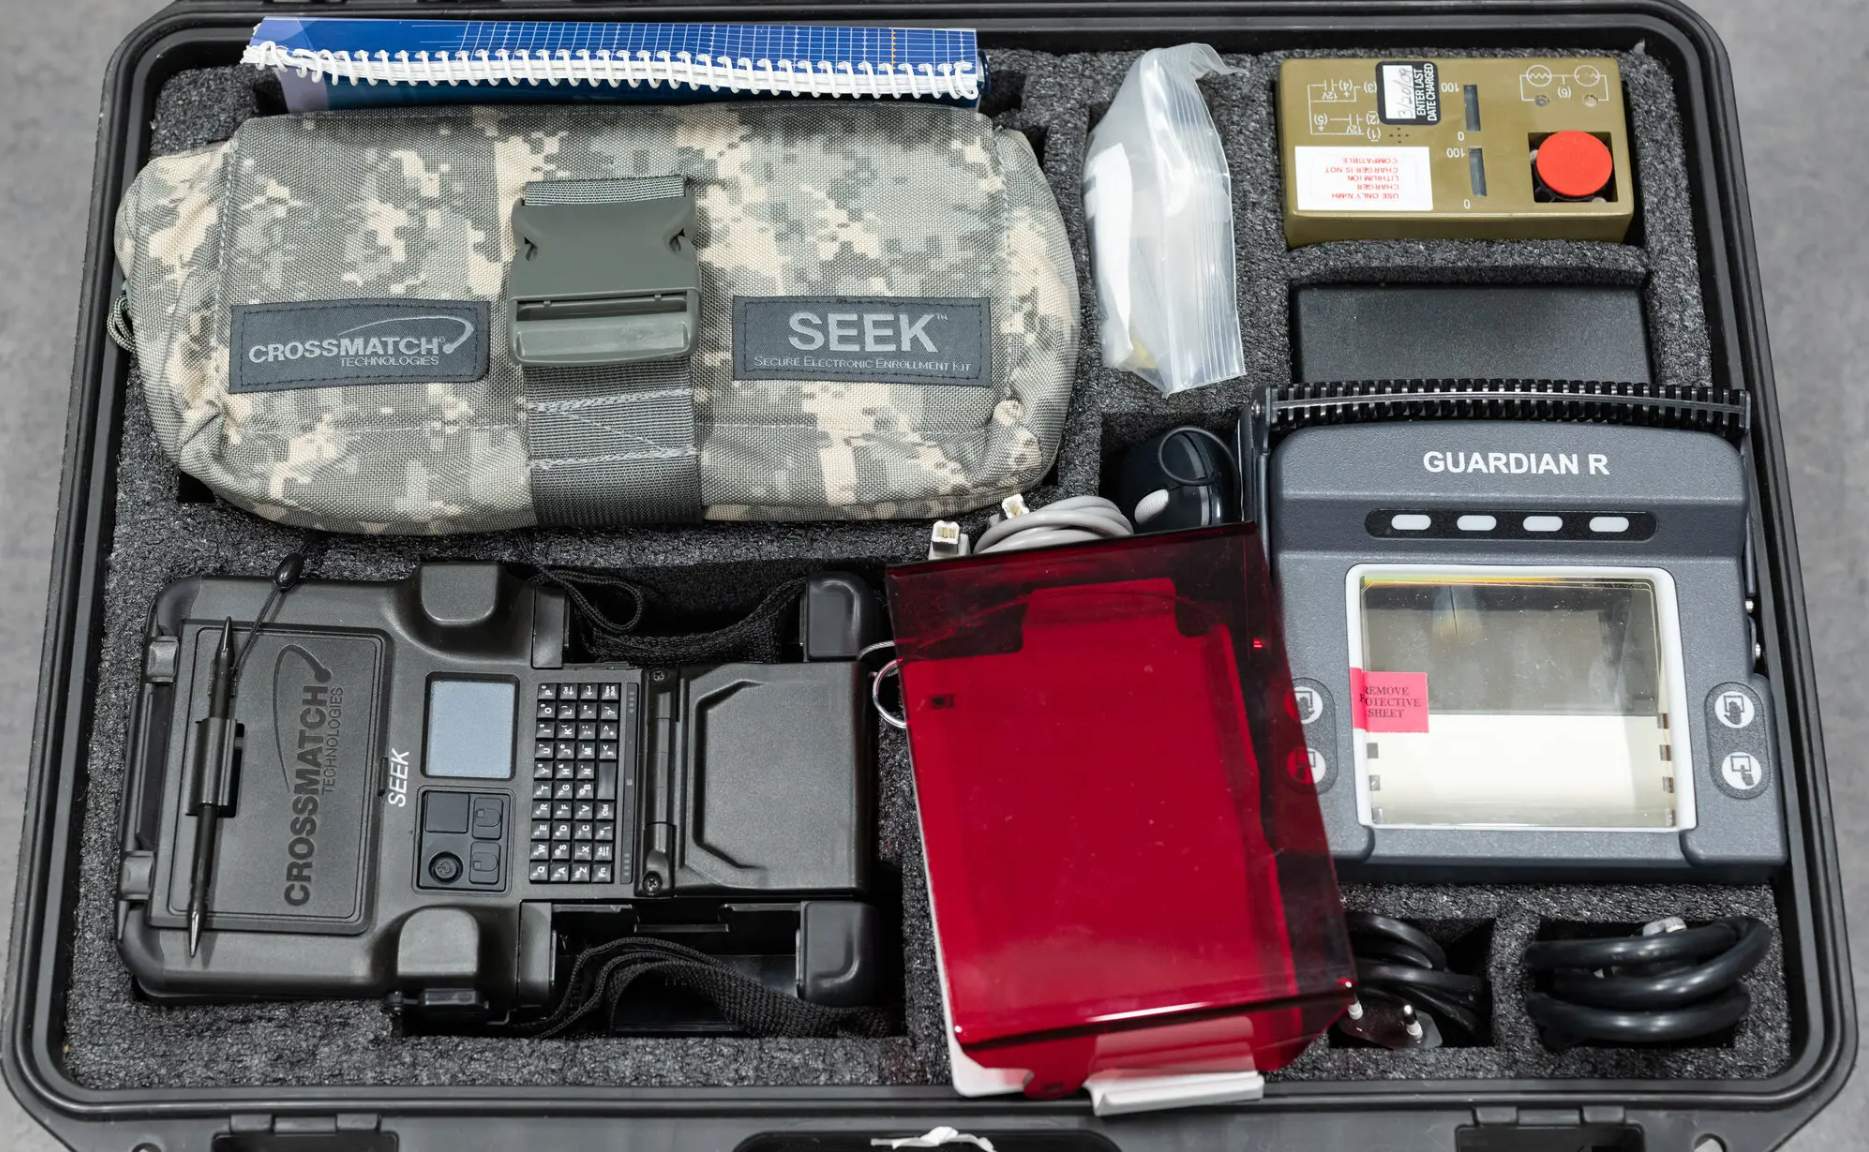 A Seek-II spy kit sold on eBay